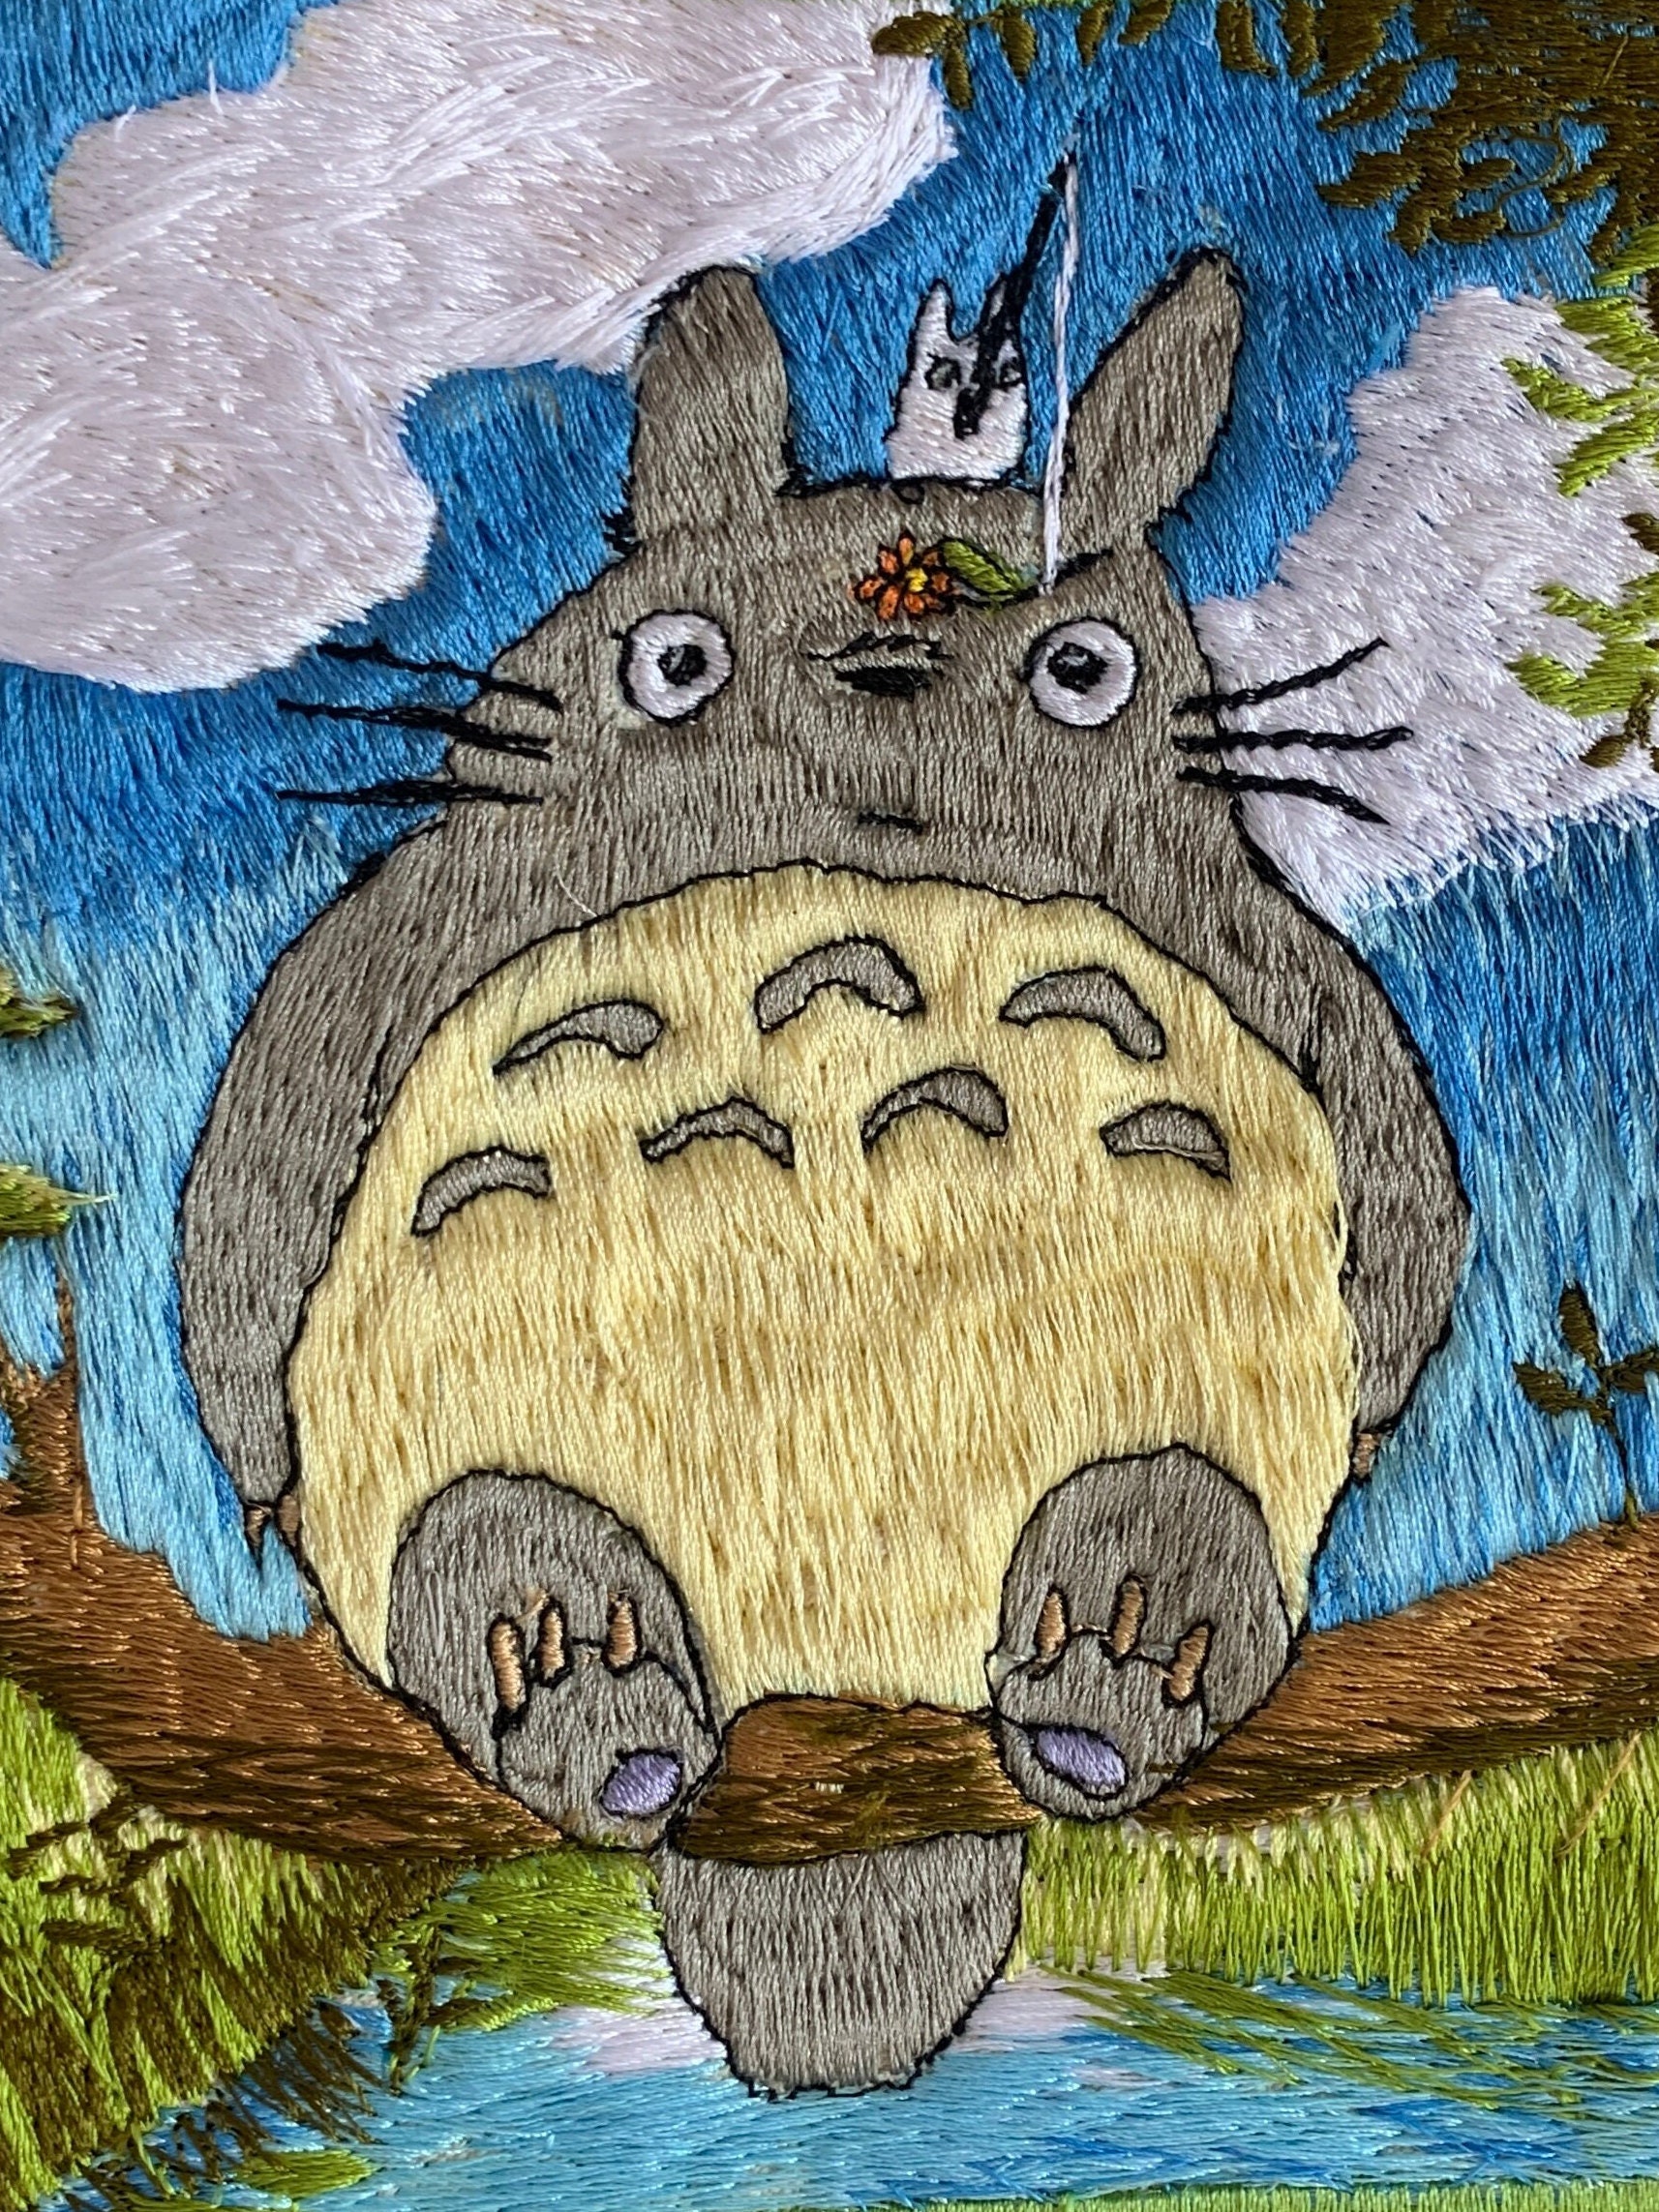 Chào mừng bạn đến với cửa hàng Etsy của chúng tôi! Chúng tôi tự hào giới thiệu thêu Totoro và patch câu cá độc đáo. Các sản phẩm của chúng tôi được làm thủ công và đảm bảo chất lượng cao. Hãy ghé qua trang web của chúng tôi để khám phá nhiều sản phẩm độc đáo khác nhé!